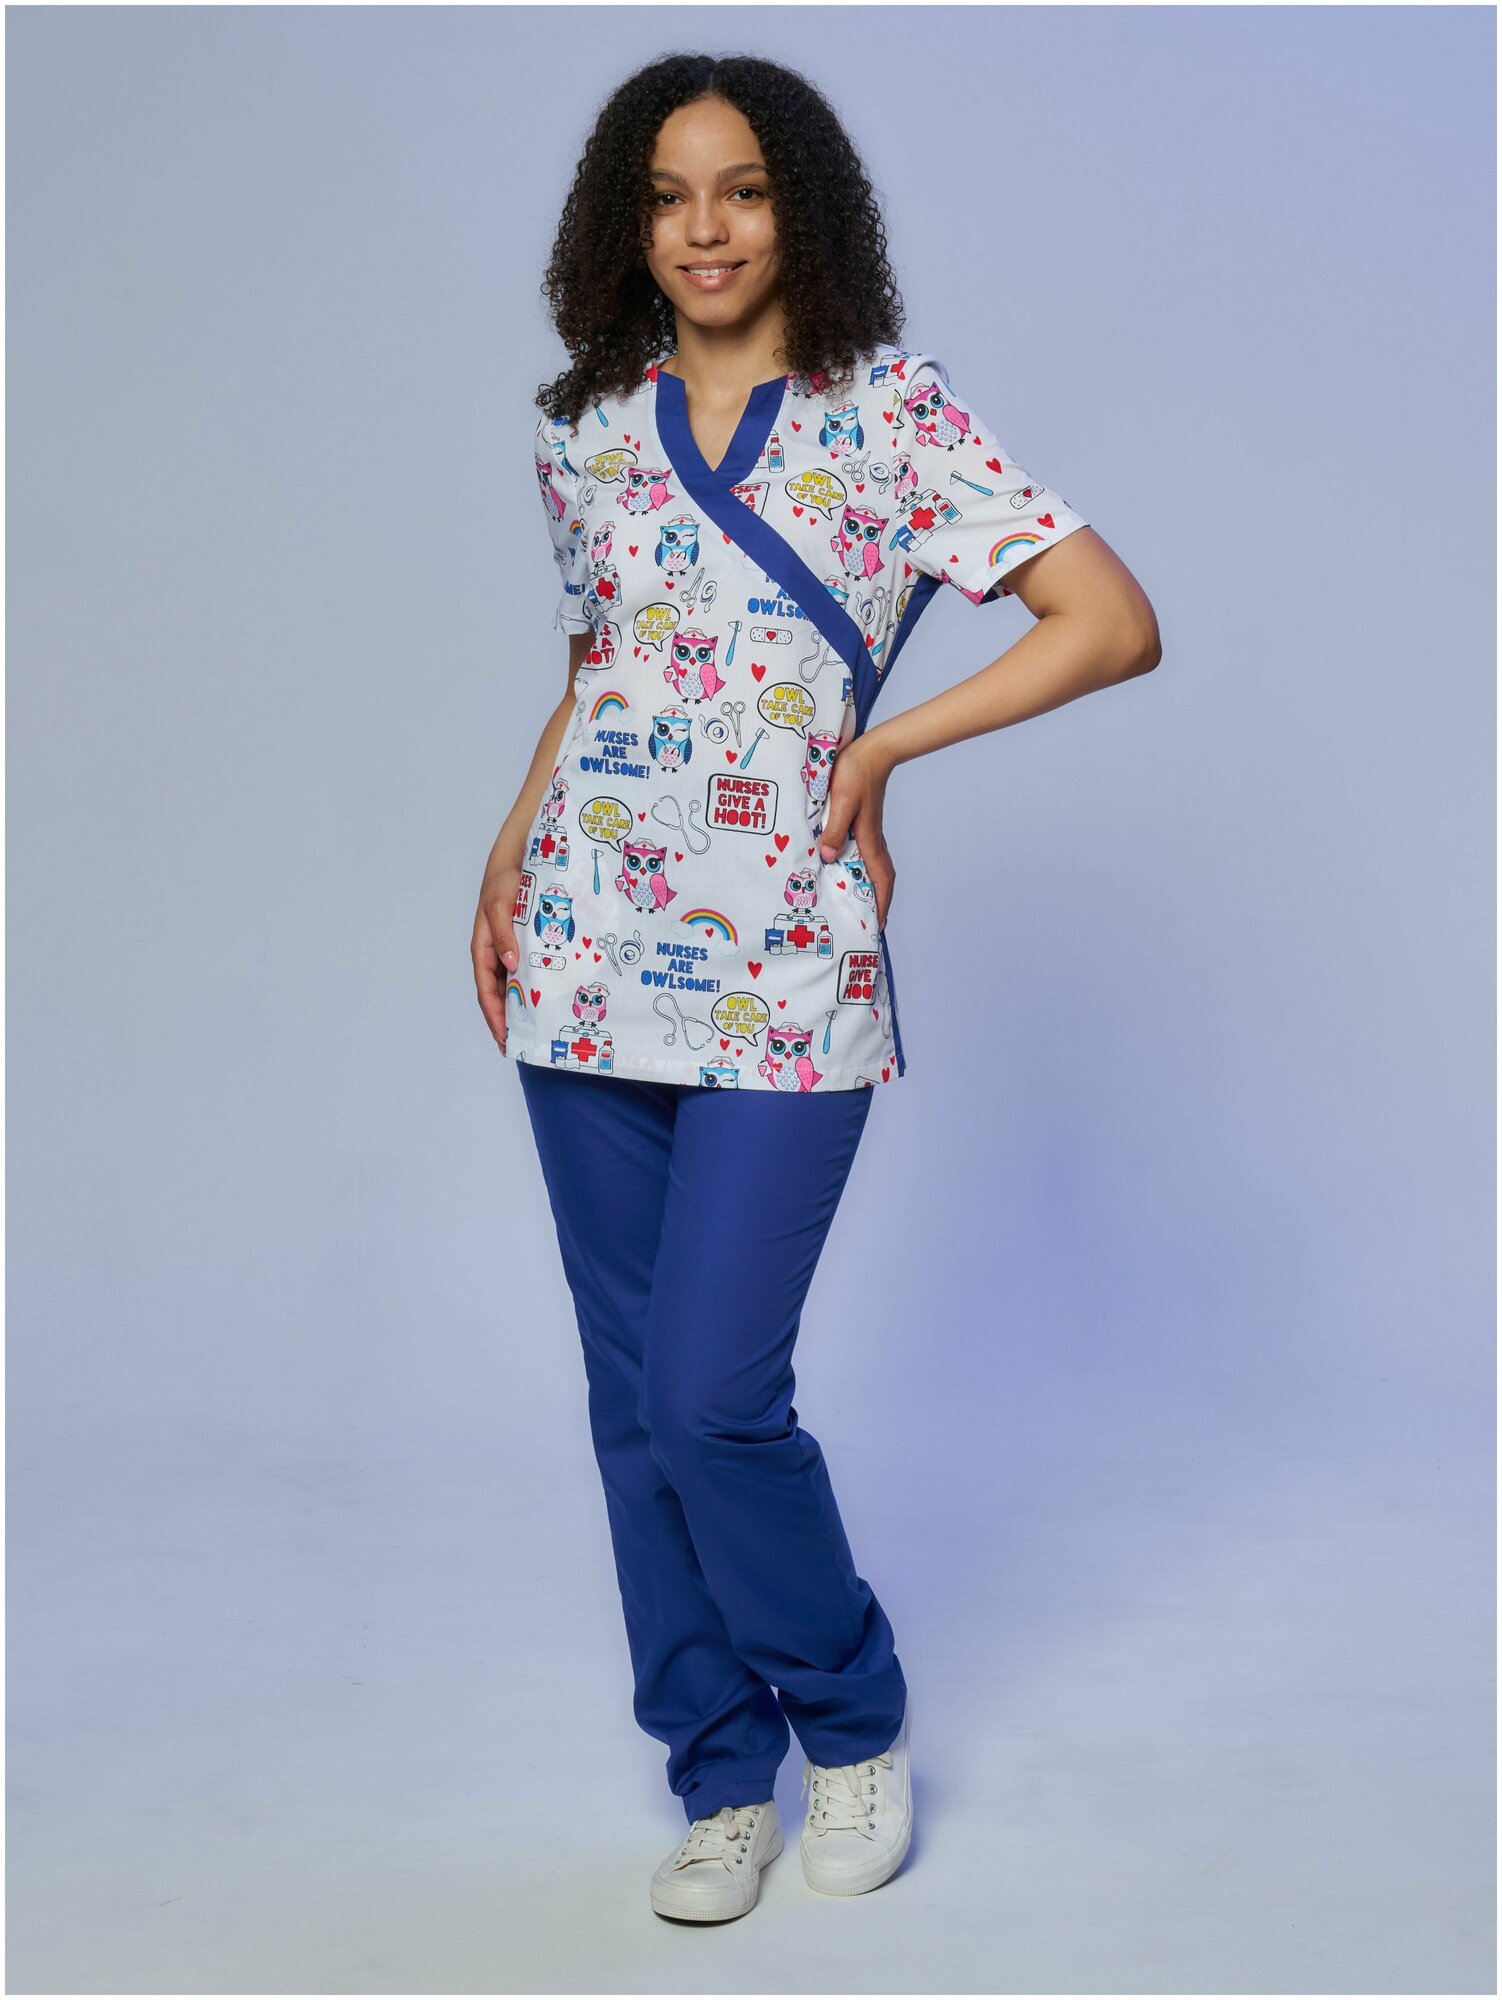 Медицинский костюм Альба-С женский с принтом синий. Хирургический костюм с рисунком голубой больших размеров. Спецодежда для женщин (блуза с брюками). Рабочий комплект одежды для врача. Размер 54